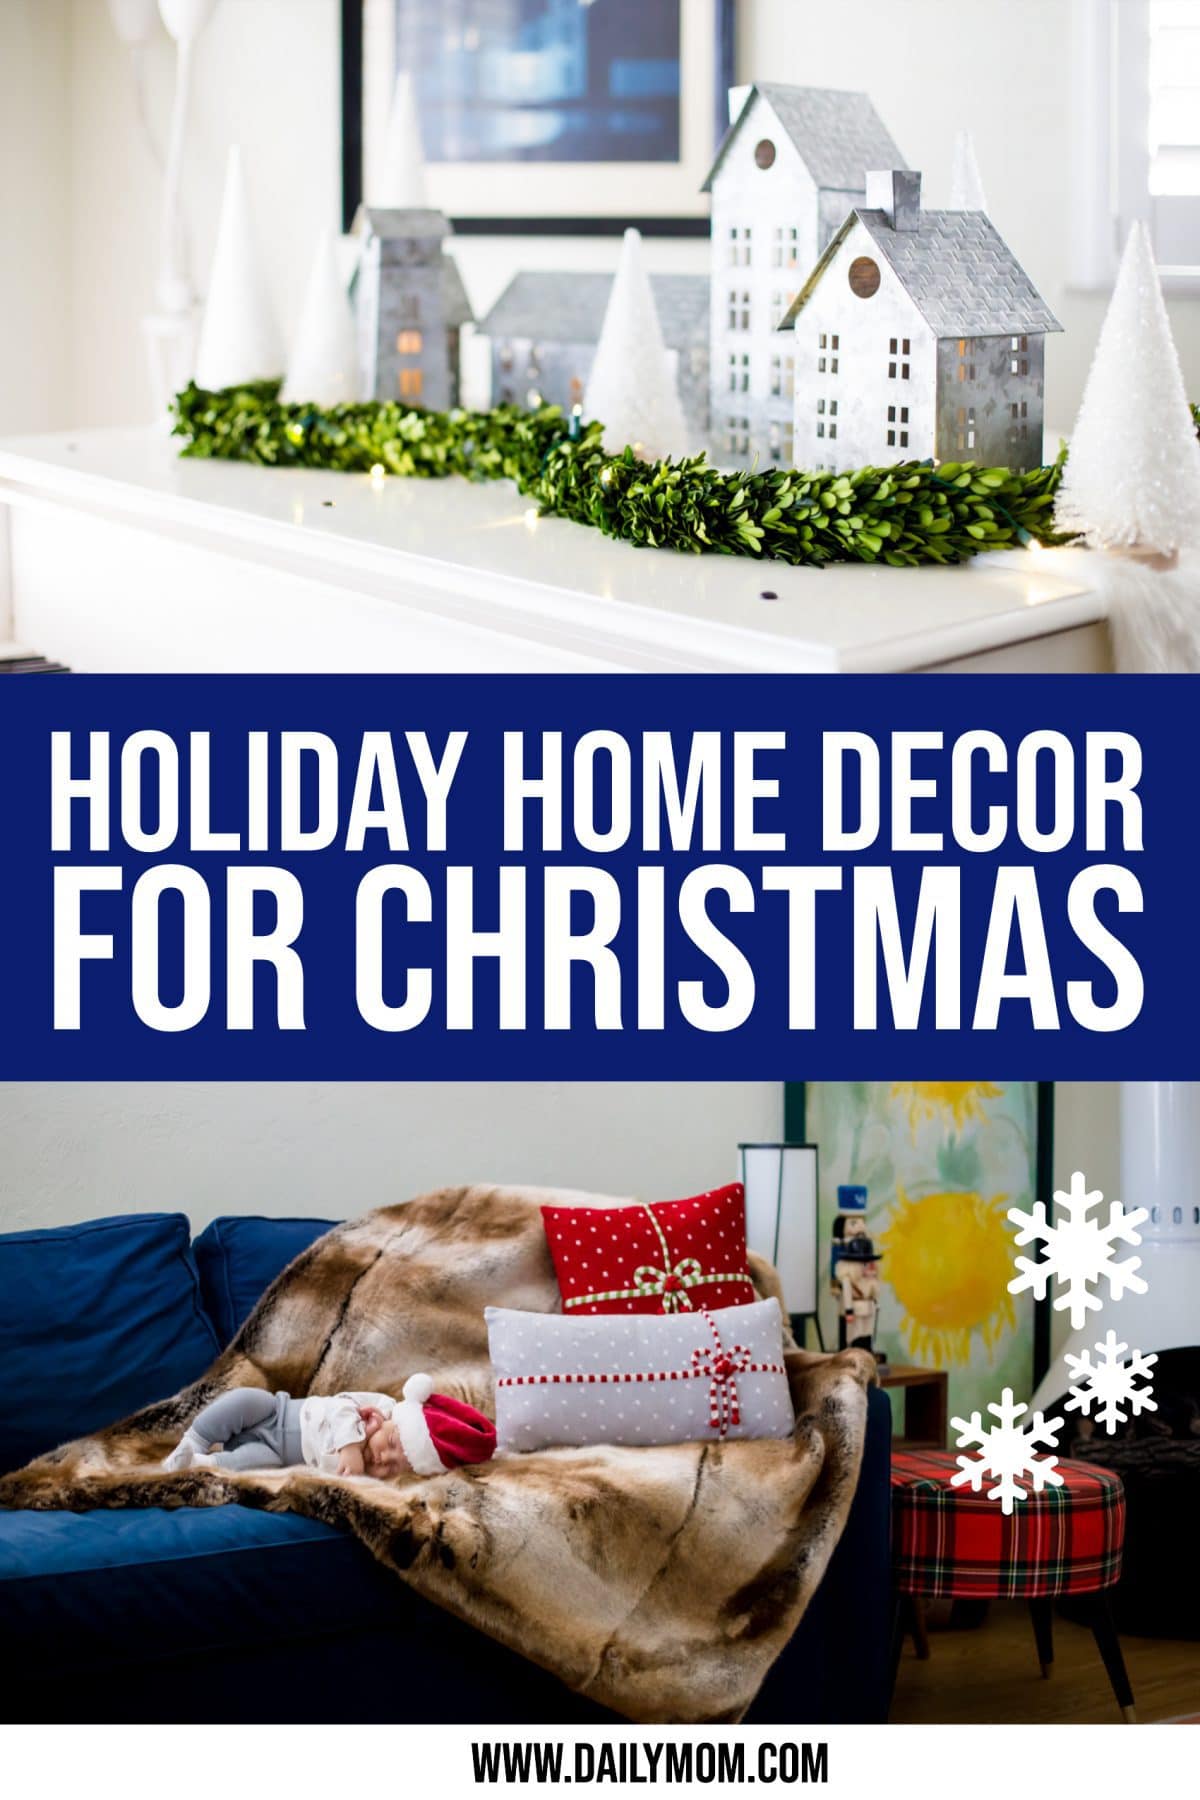 Holiday Home Decor For Christmas {2019}